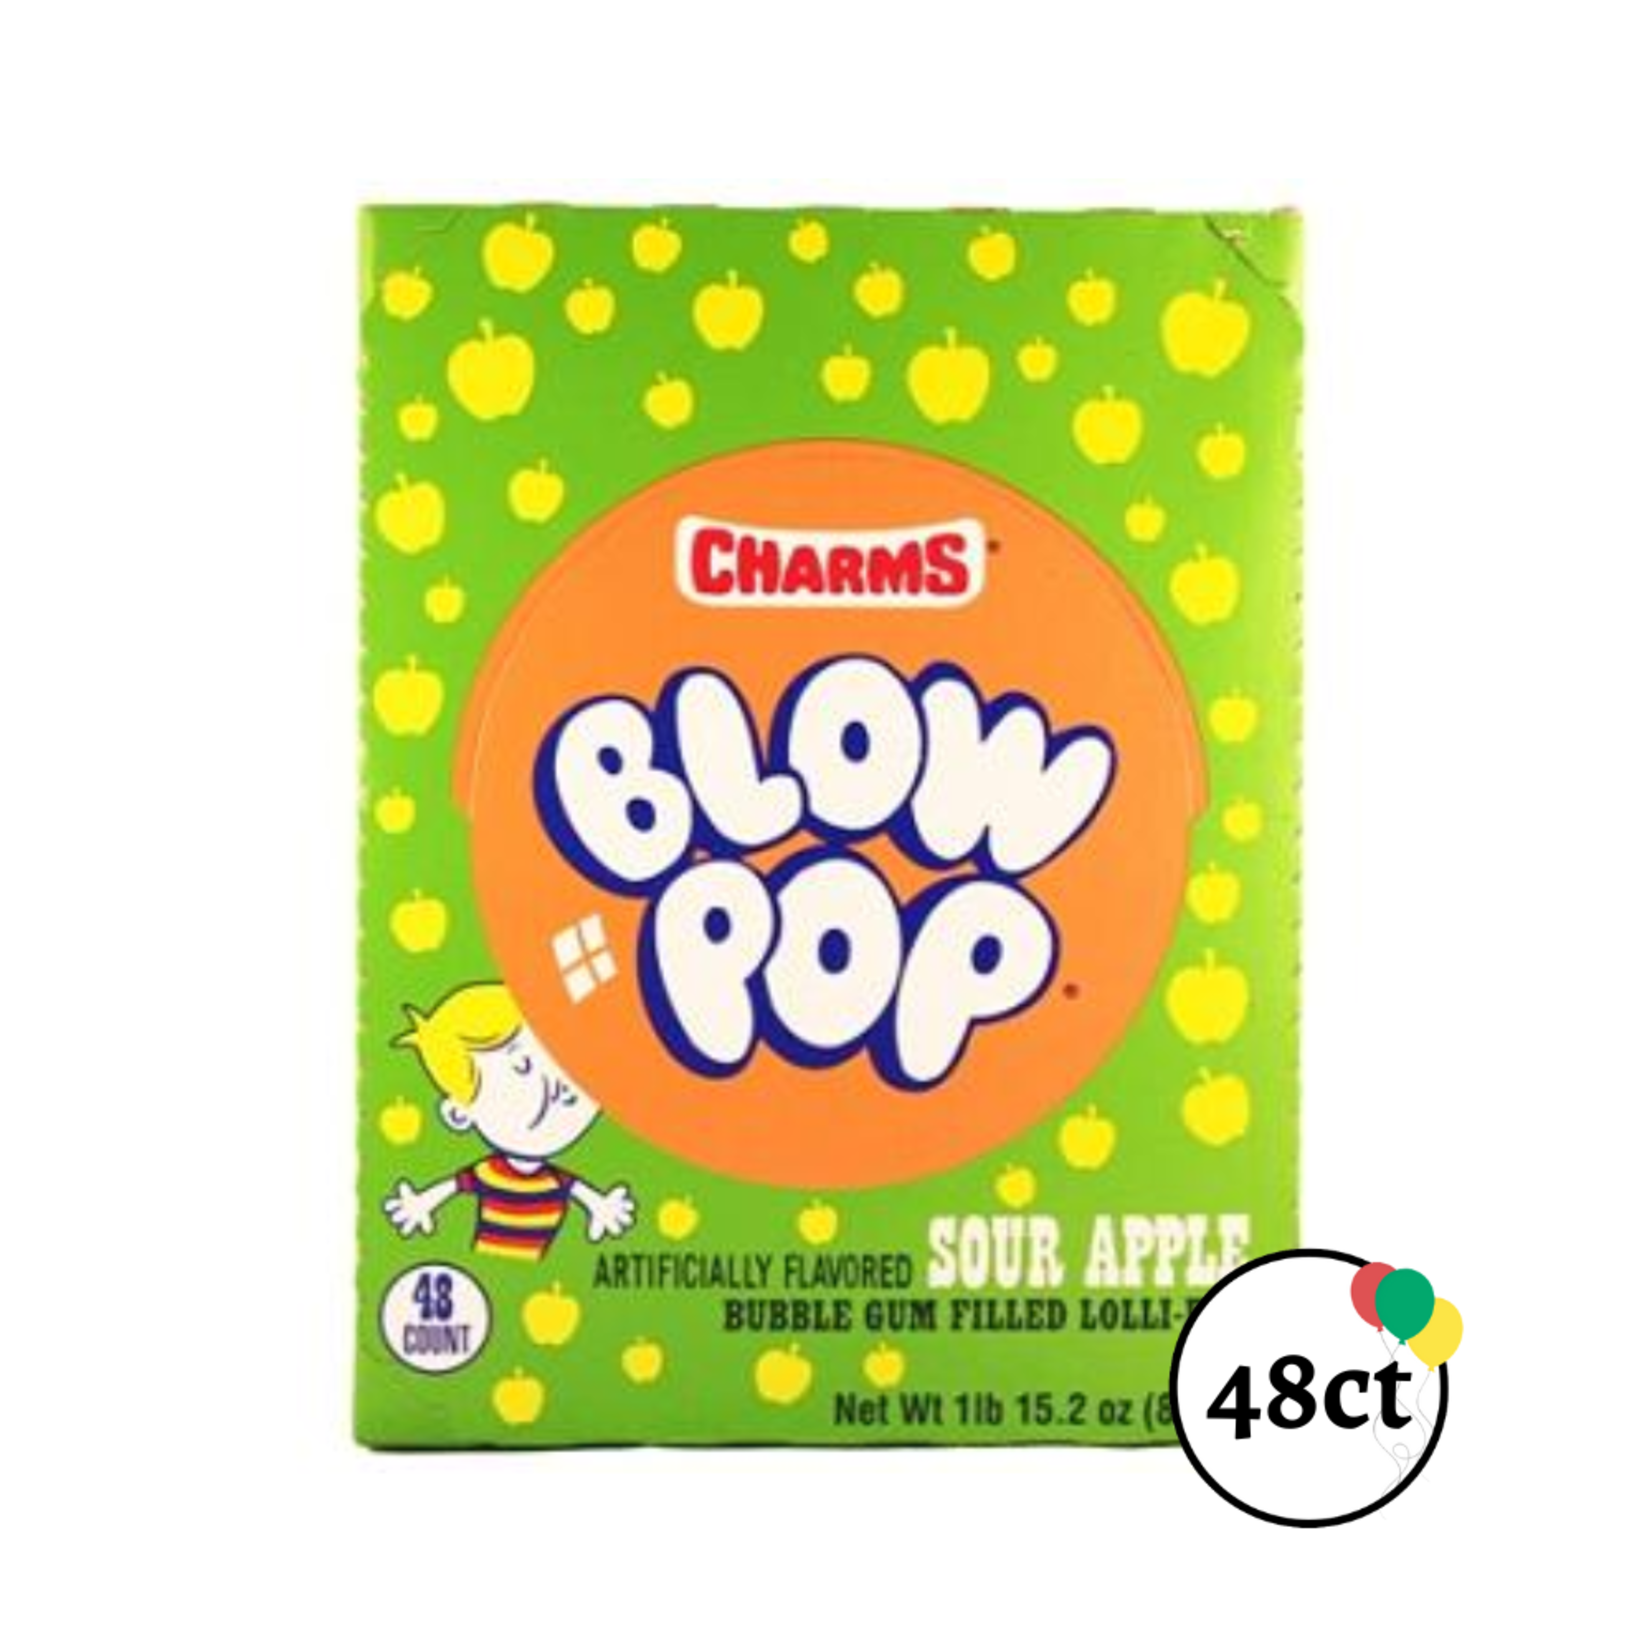 Charms Blow Pop Sour Apple 48ct.